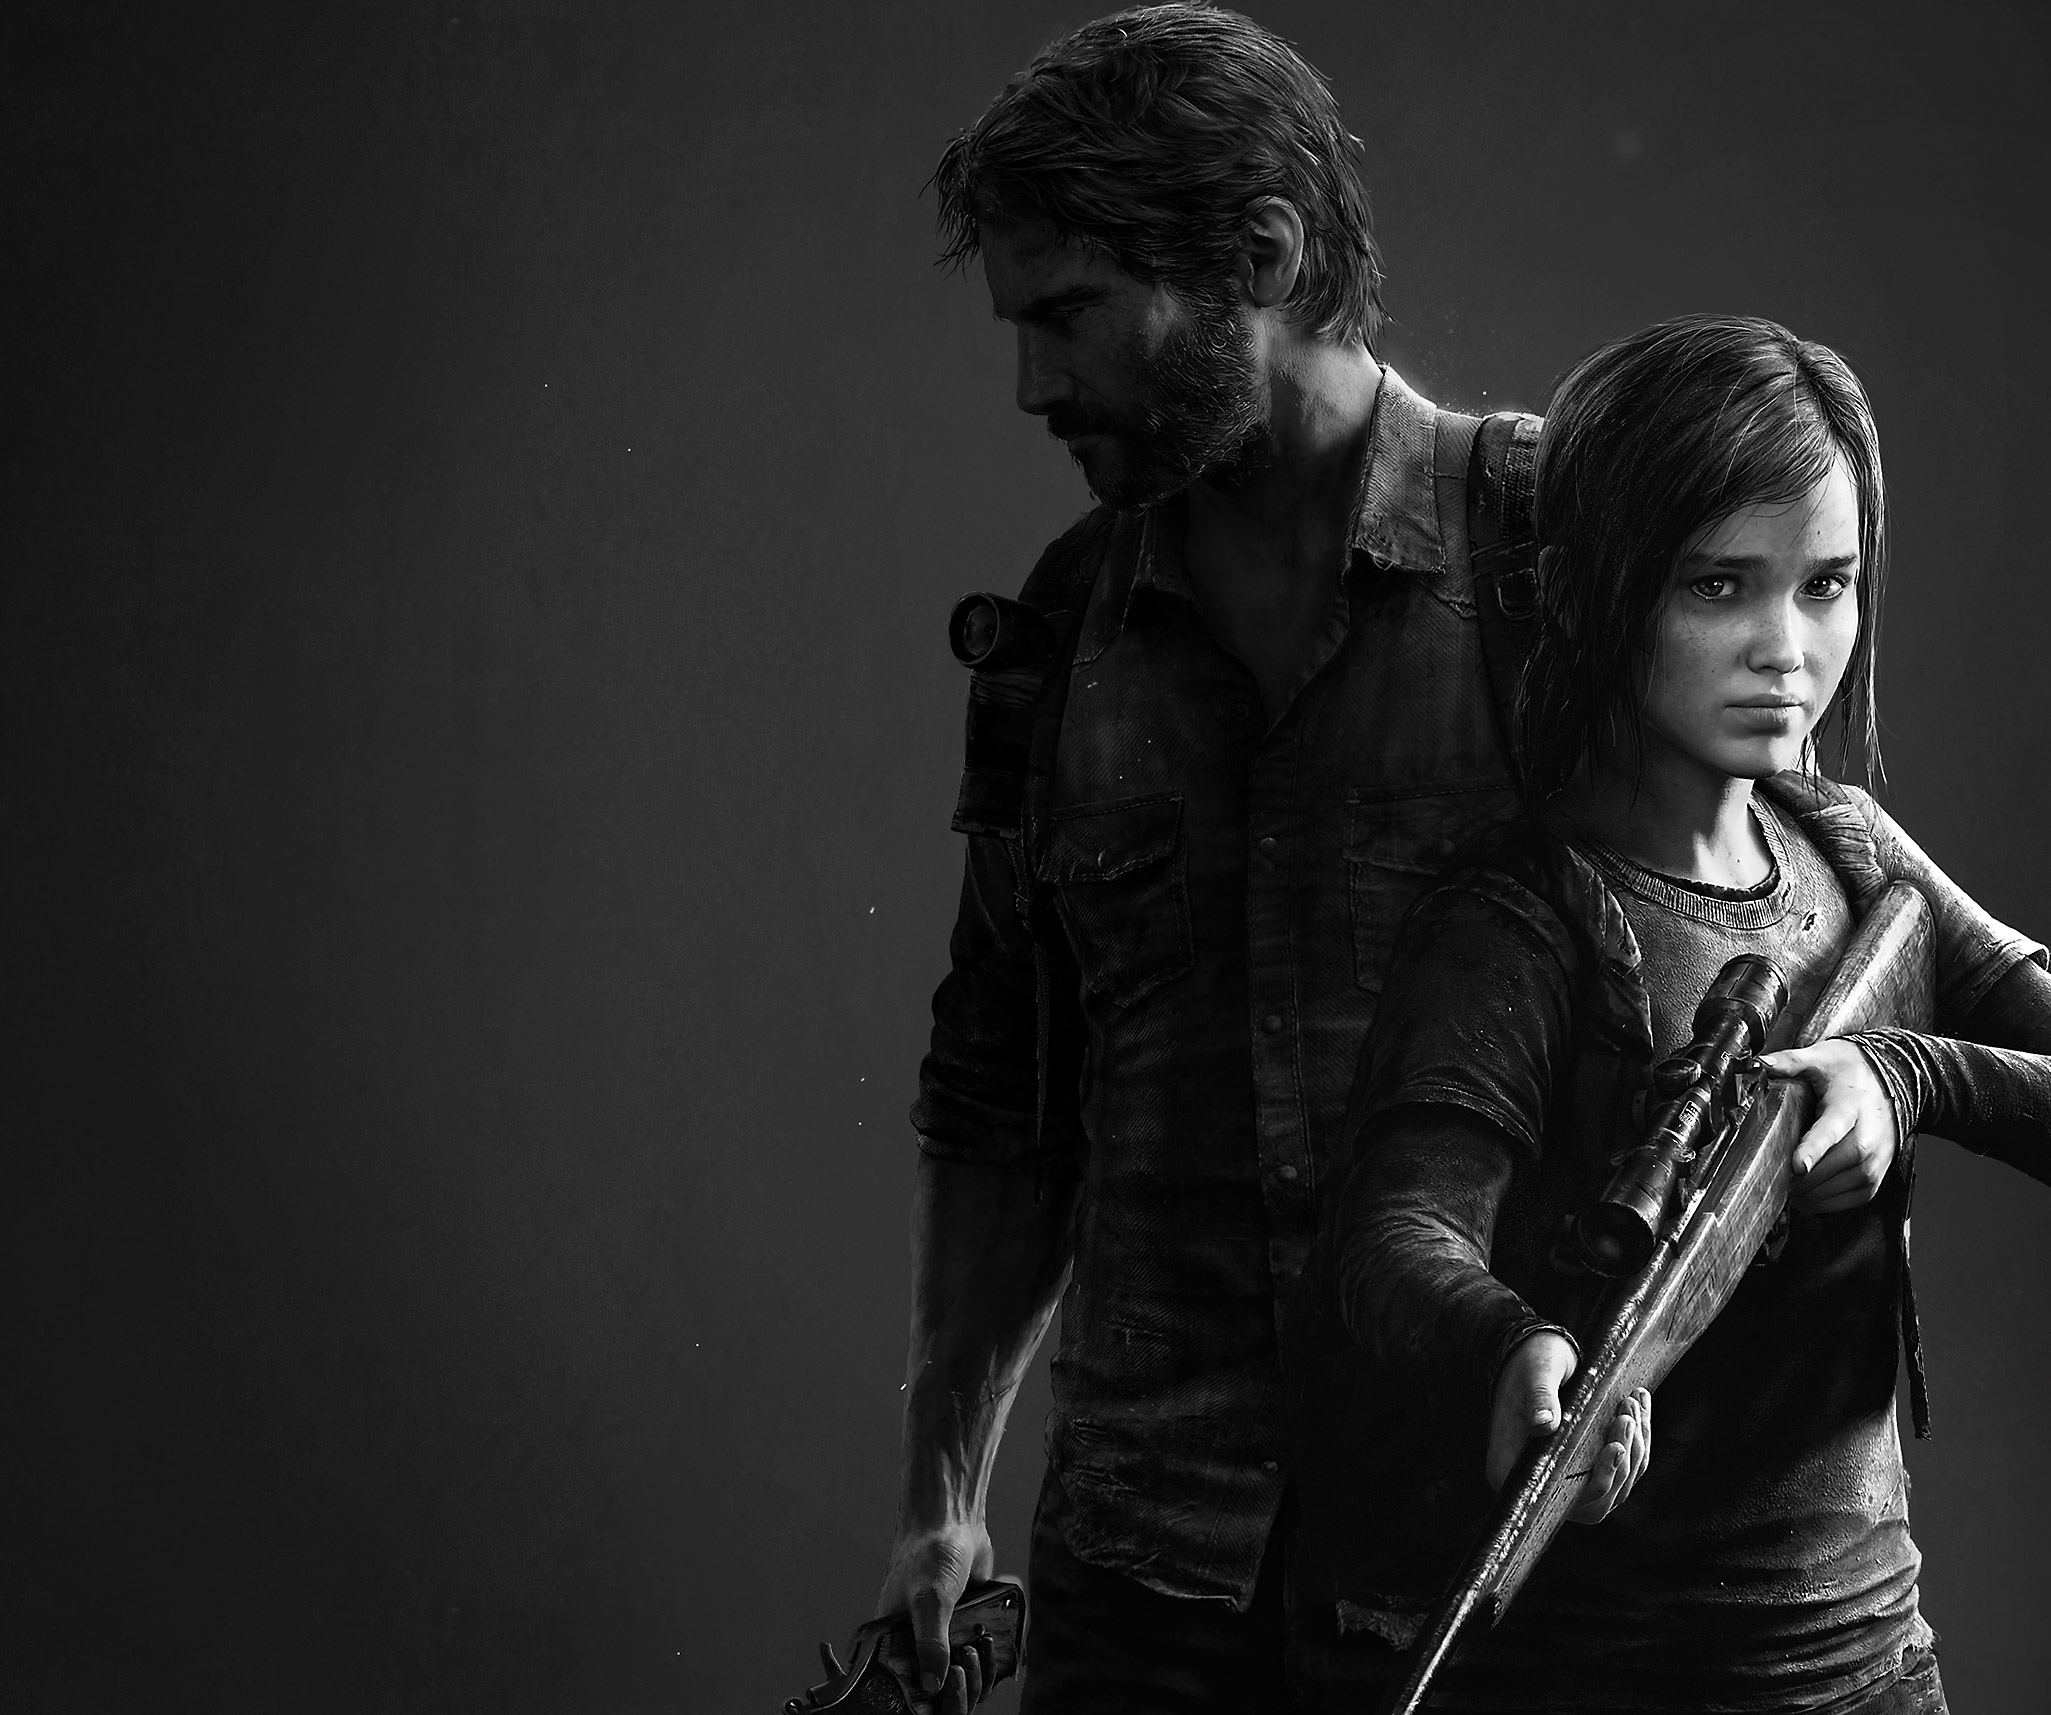 Arte pricniapl de The Last of Us Remastered que muestra un renderizado en blanco y negro de los personajes principales Joel y Elle.